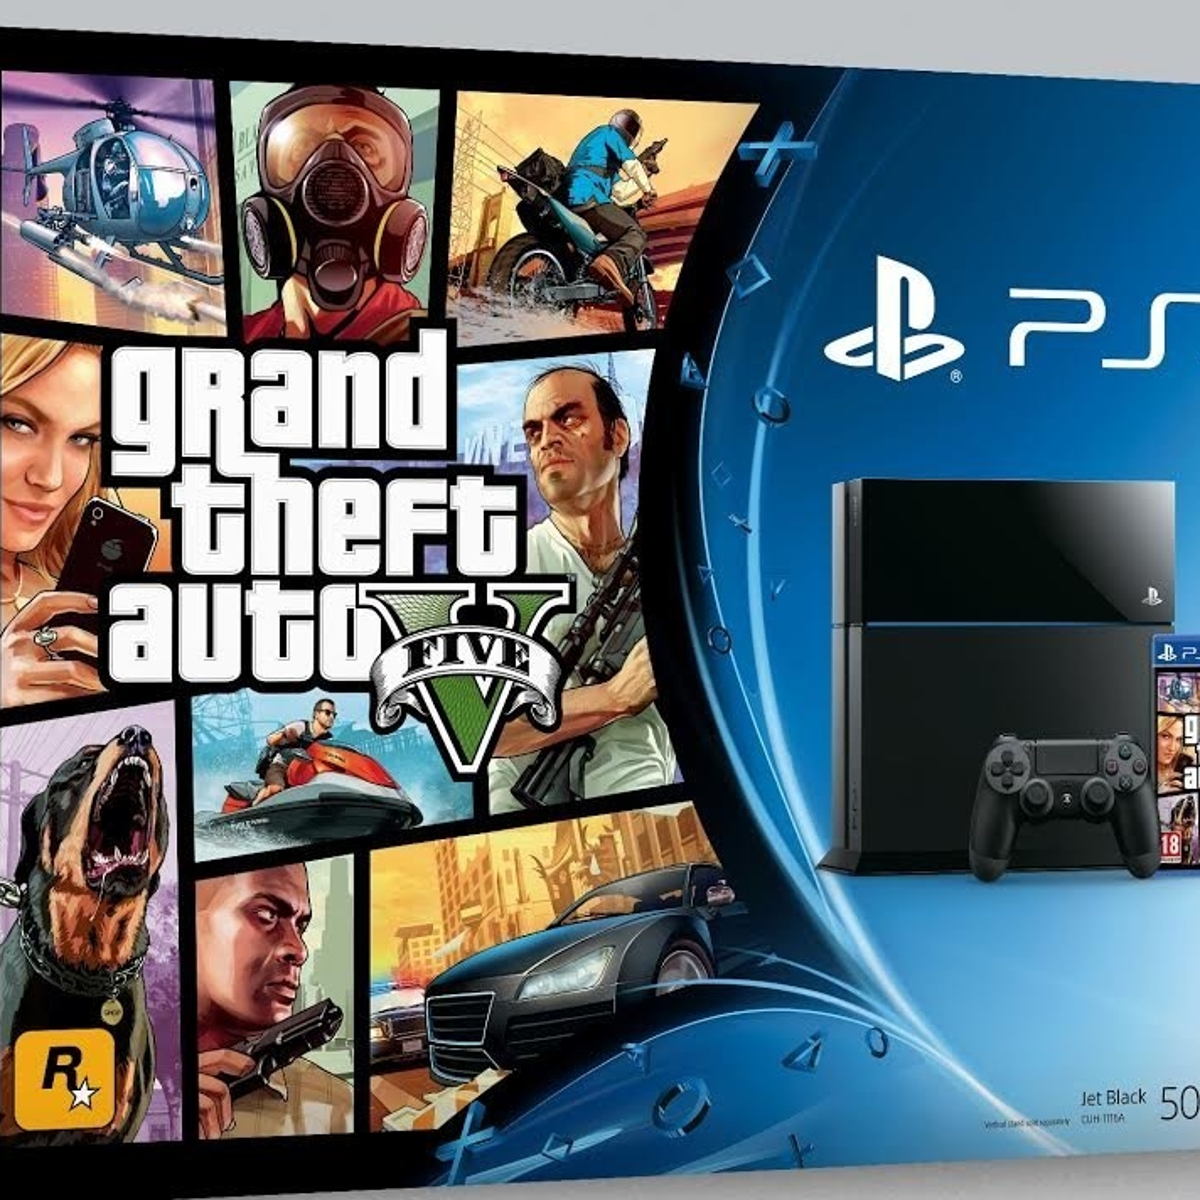 Grand Theft auto v ps4. Sony PLAYSTATION игровая приставка с GTA 5. Sony PLAYSTATION 4 GTA 5. Диск GTA 5 на PLAYSTATION 4. Ps4 перевод